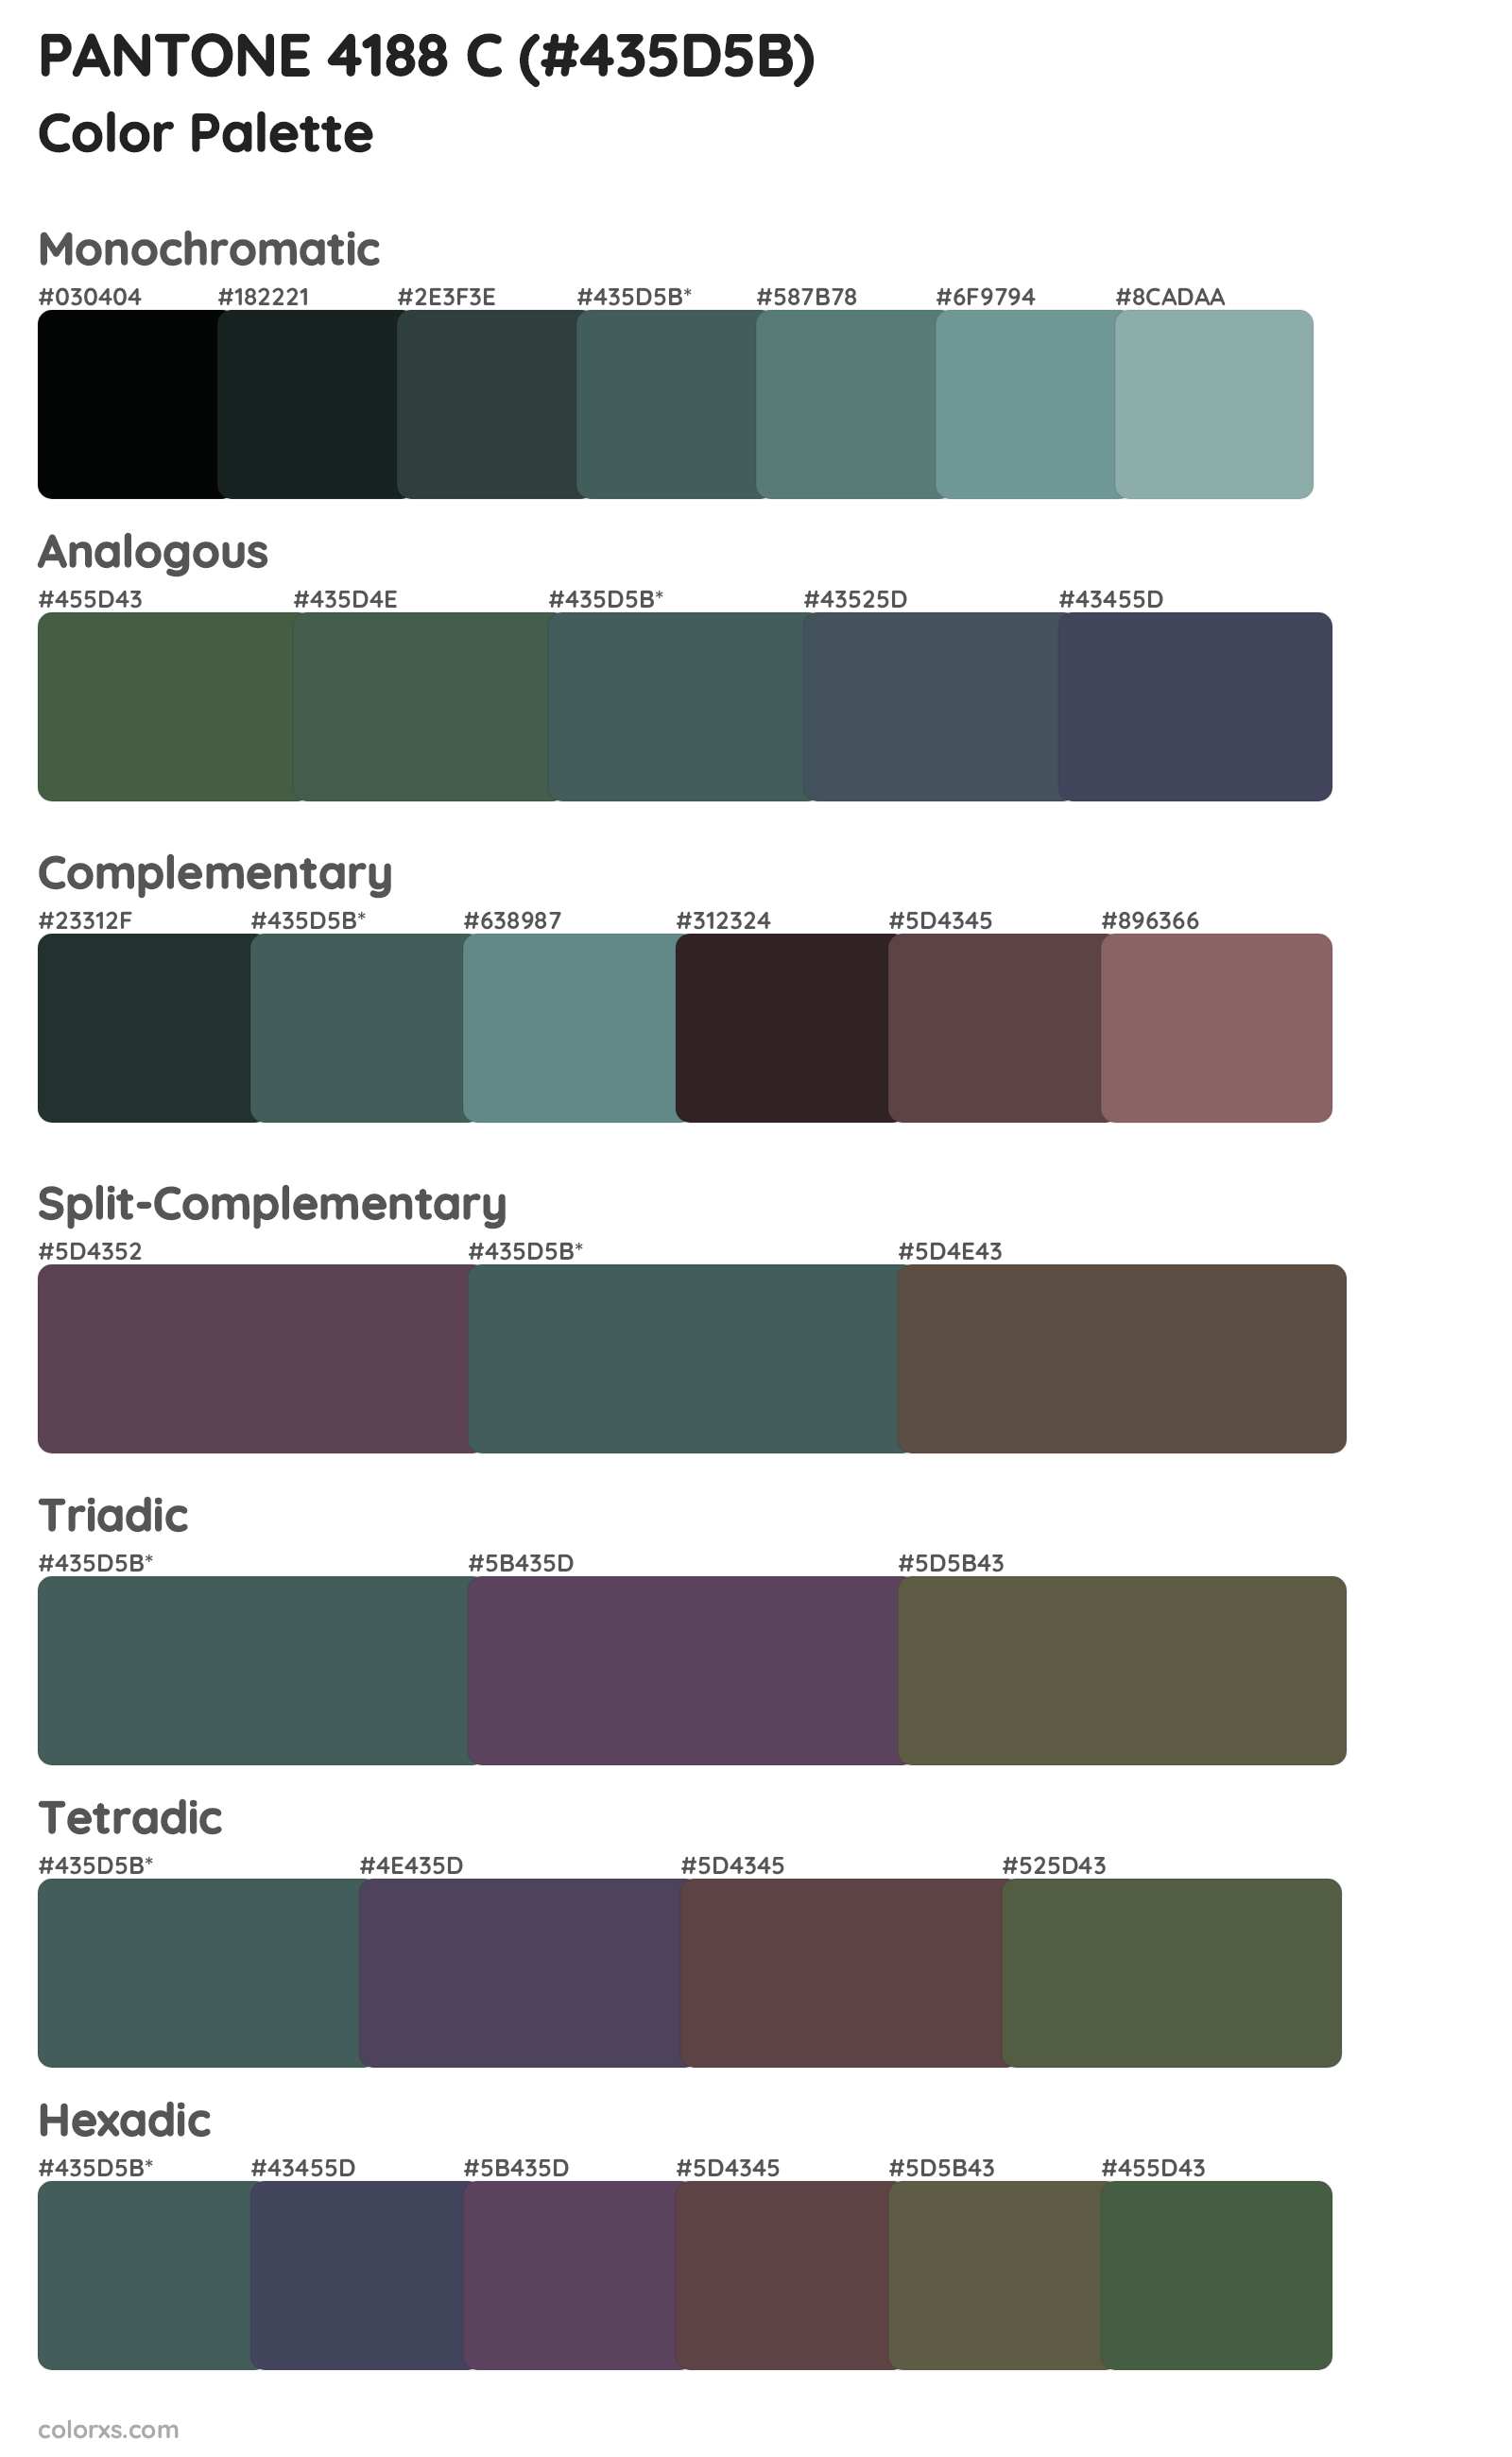 PANTONE 4188 C Color Scheme Palettes